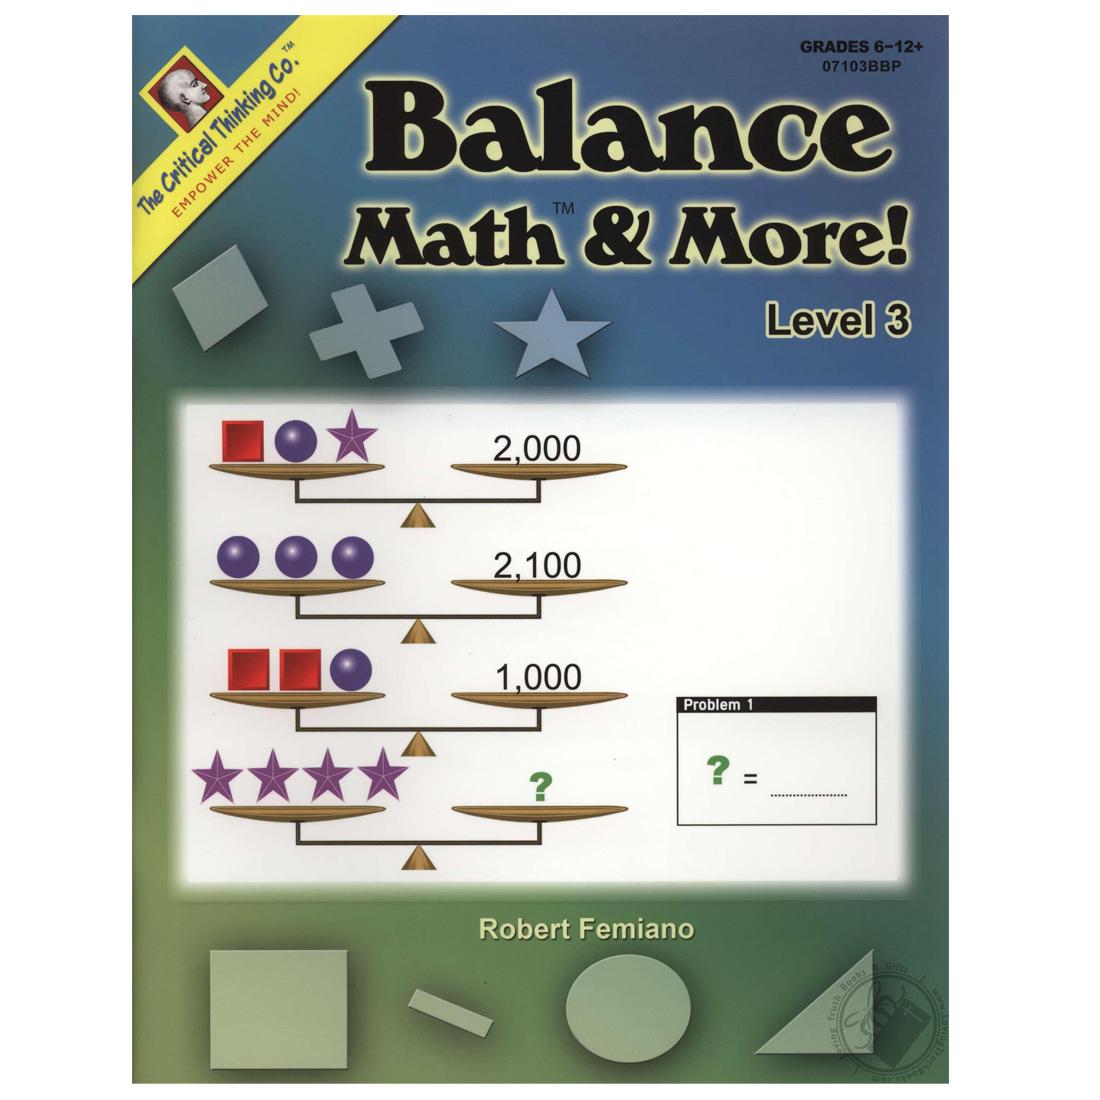 Balance Math & More! Level 3 Book